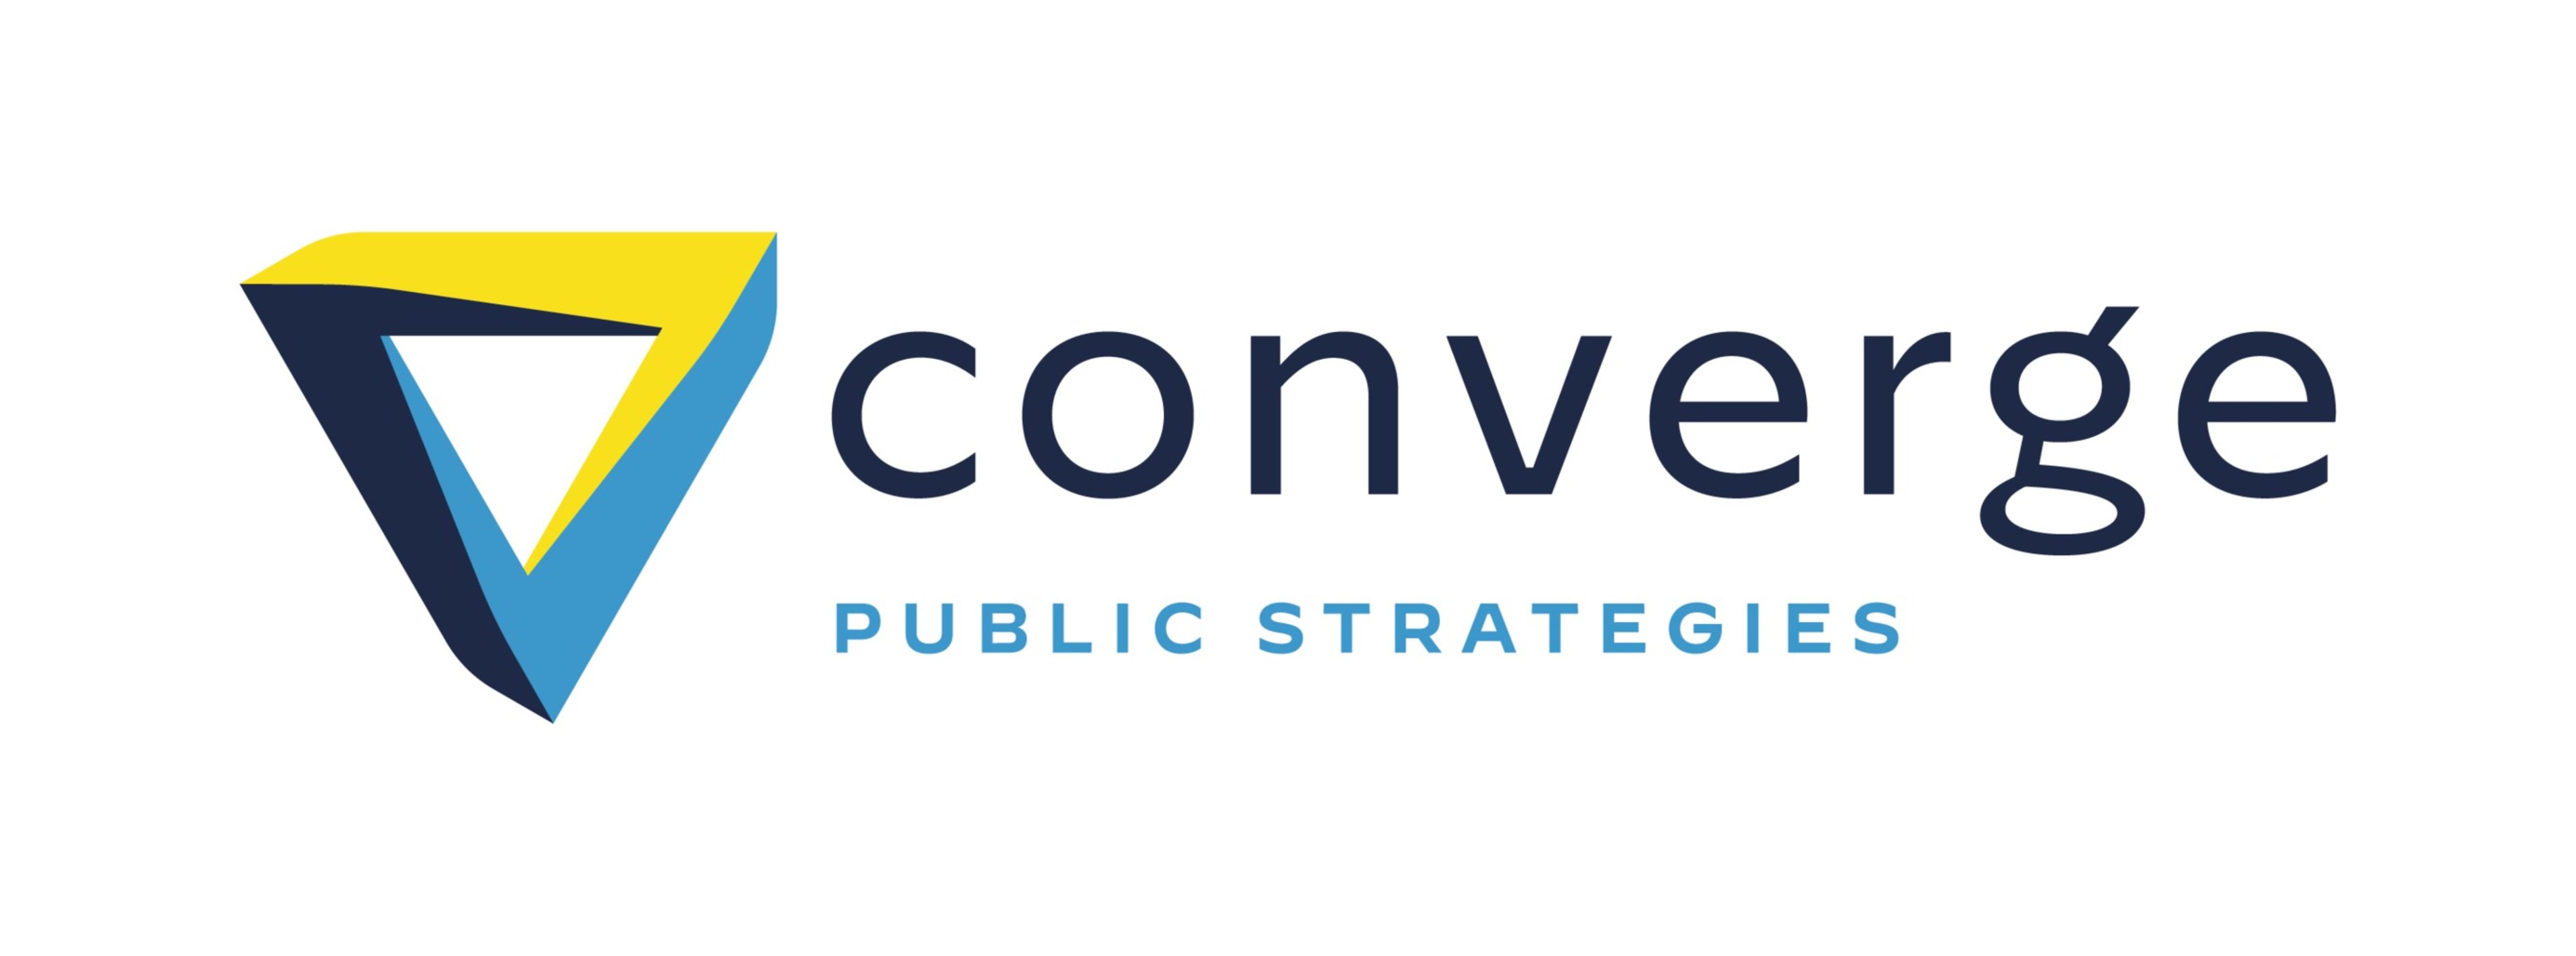 Converge_Logo.jpg